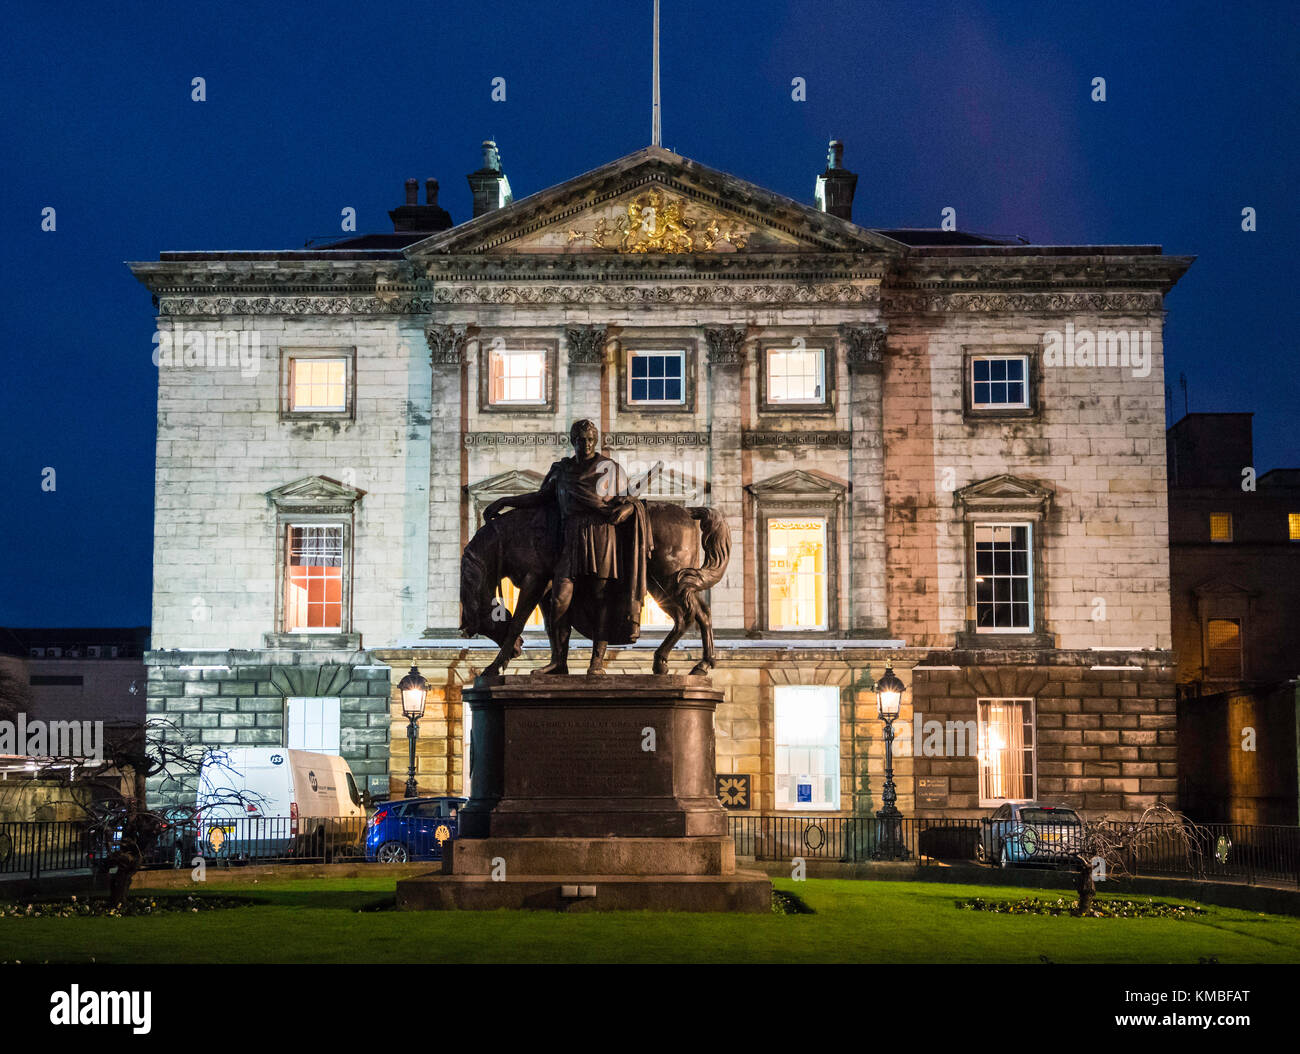 Nachtansicht des Hauptquartiers der Royal Bank of Scotland am St Andrews Square Edinburgh, Schottland, Großbritannien Stockfoto